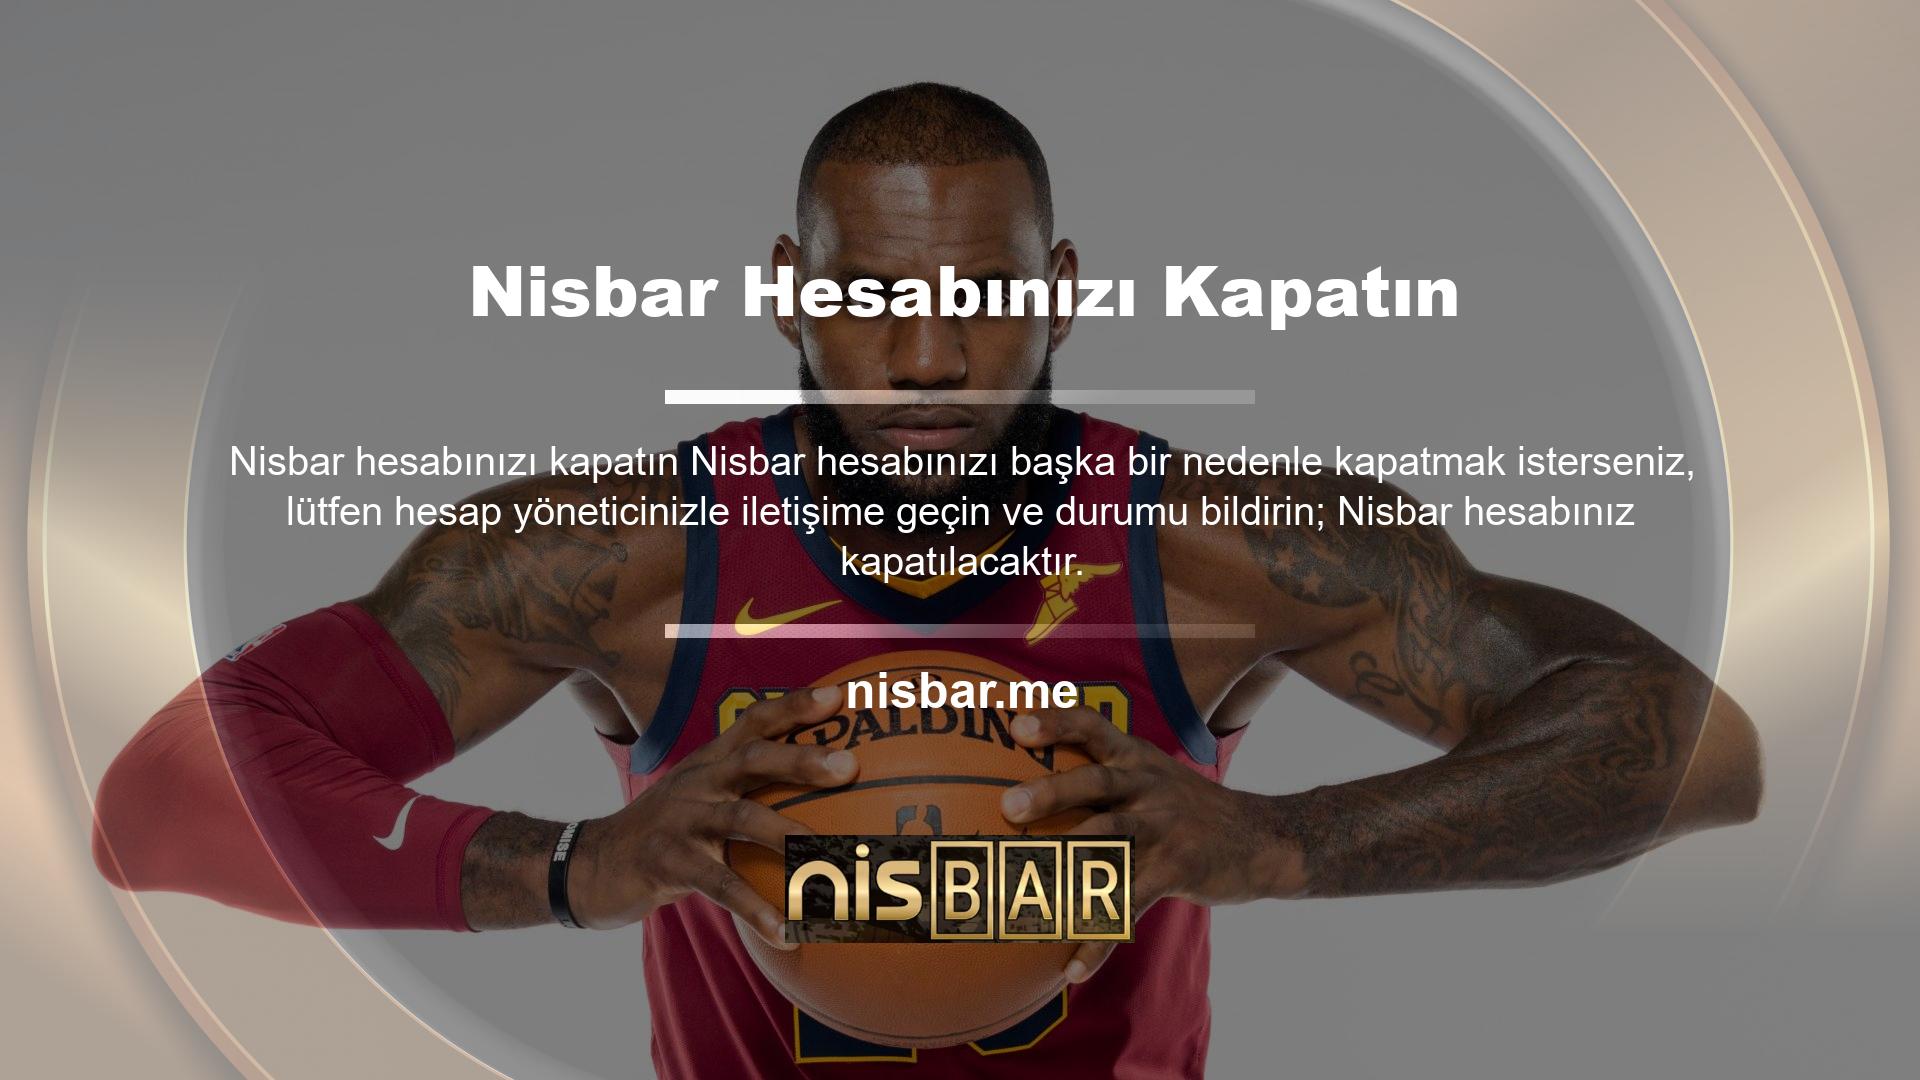 Nisbar web sitesi, Nisbar ile ilgili konularda veri sağlar ve mevcut web sitesi adresinden bir düğmeyi tıklayarak oturum açmanıza olanak tanır